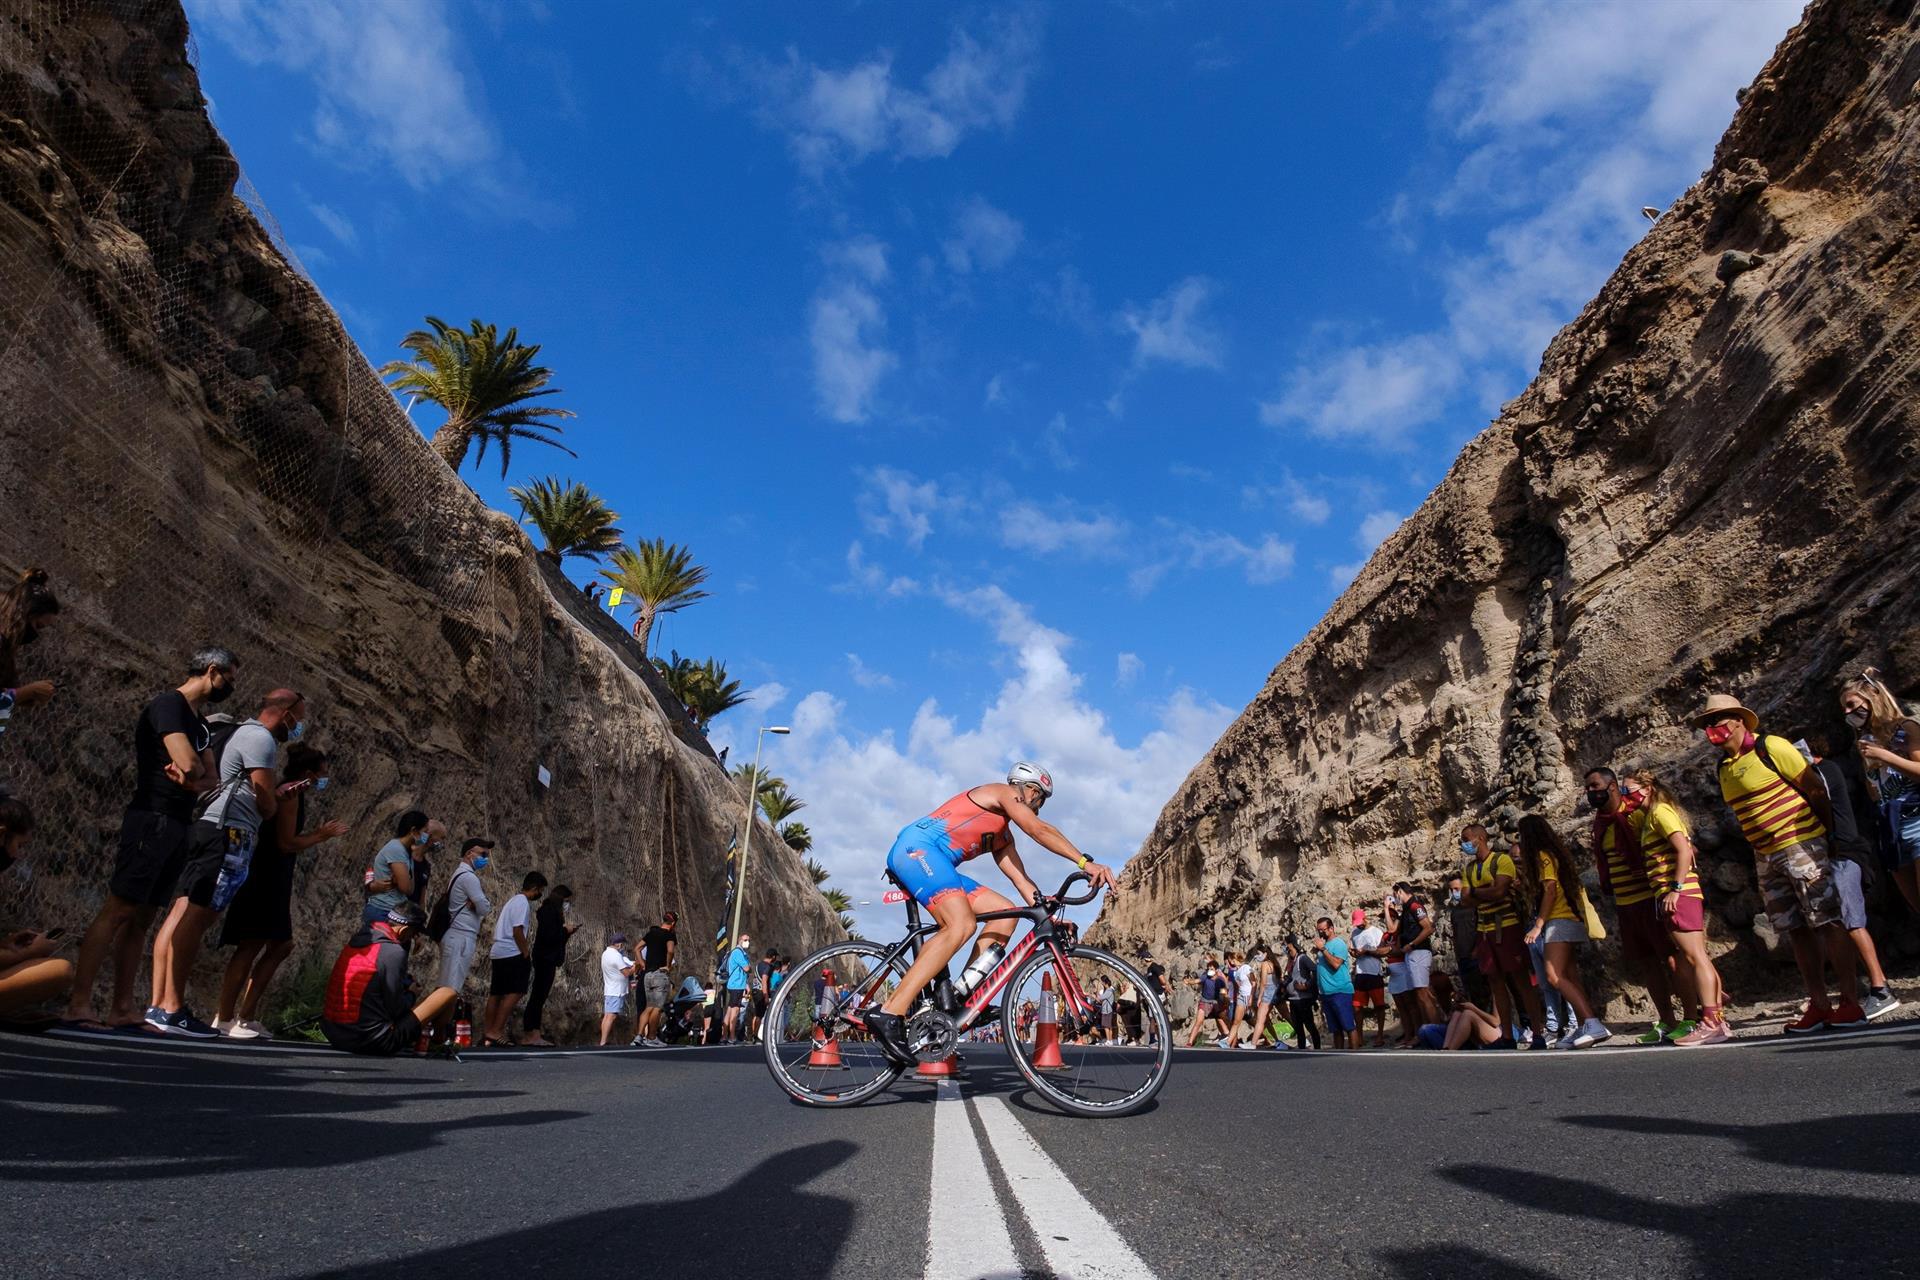 El sur de Gran Canaria acogió este sábado el primer triatlón Challenge que se celebra en Europa tras la pandemia de coronavirus, en la imagen uno de los atletas pasa junto a unos aficionados en la prueba de bicicleta. EFE/Ángel Medina G.